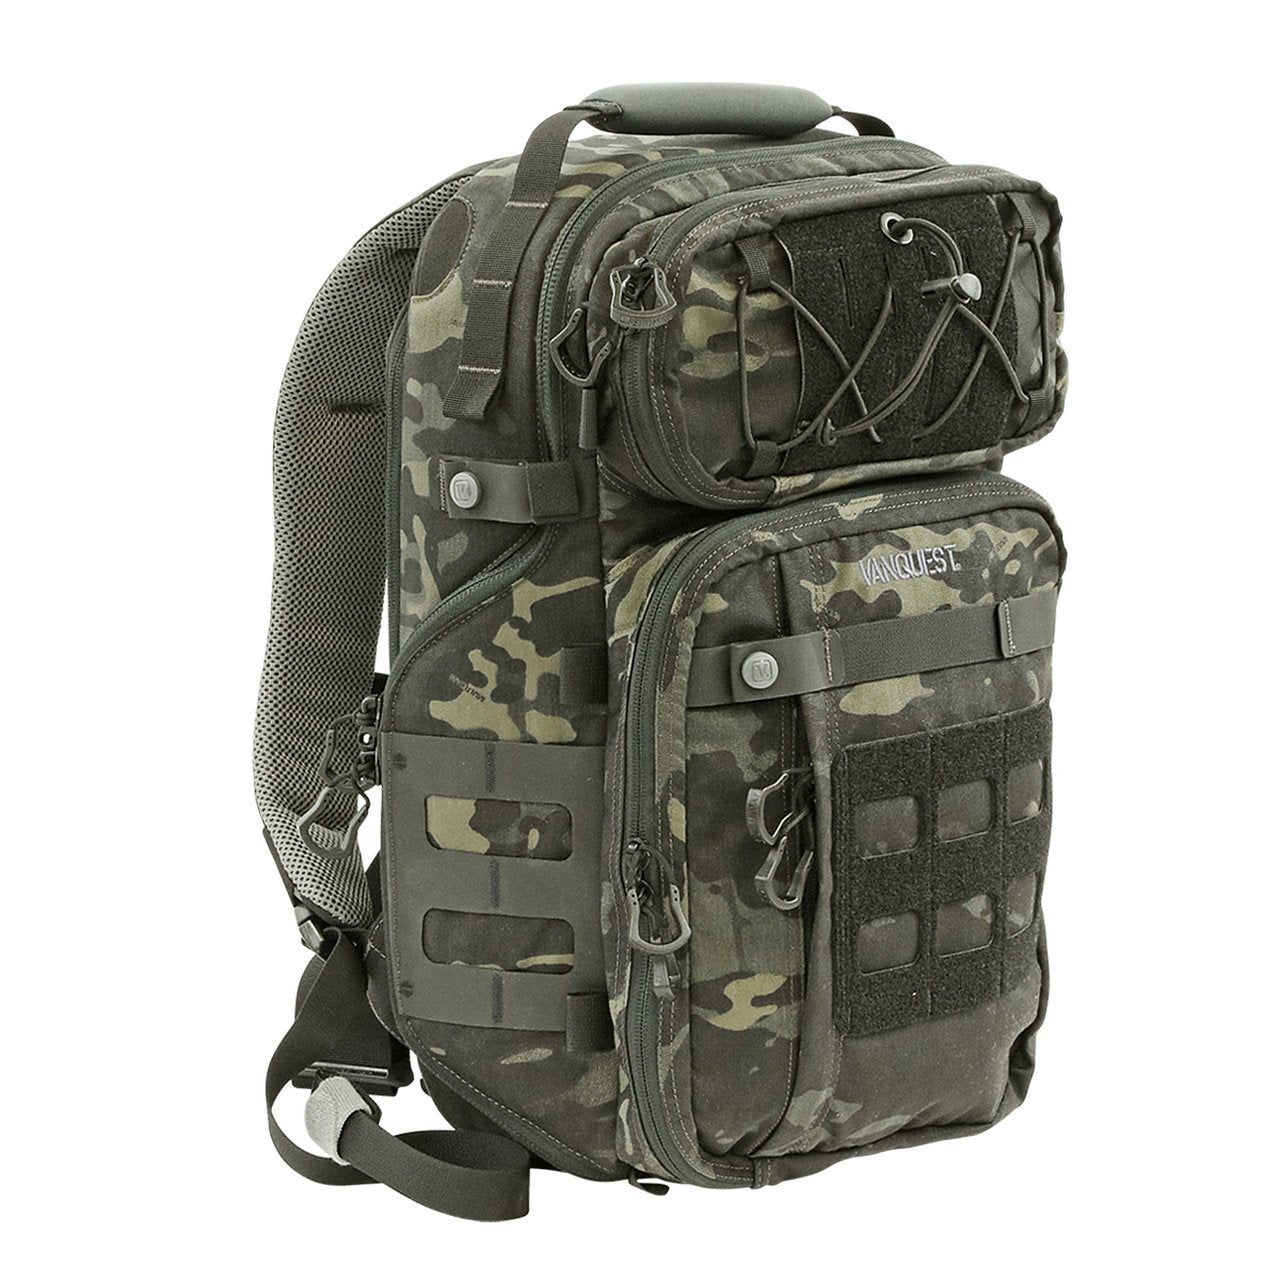 https://tactical-medicine.com/cdn/shop/products/vanquest-trident-21-backpack-214670_1280x.jpg?v=1702570337